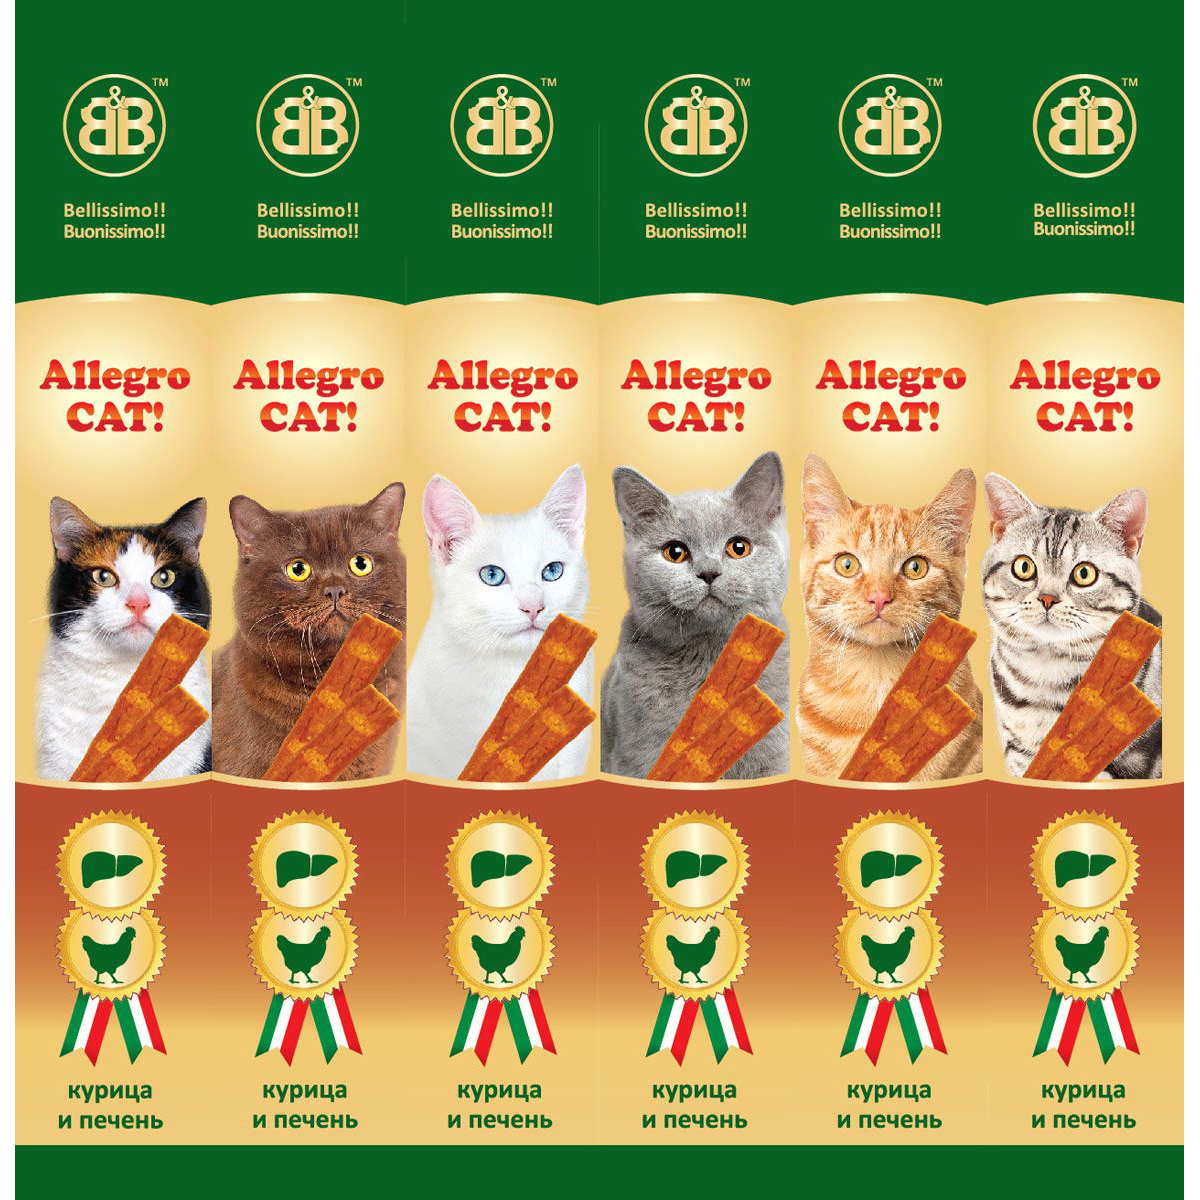 фото Лакомство для кошек b&b allegro cat мясные колбаски из курицы и печени 6 шт